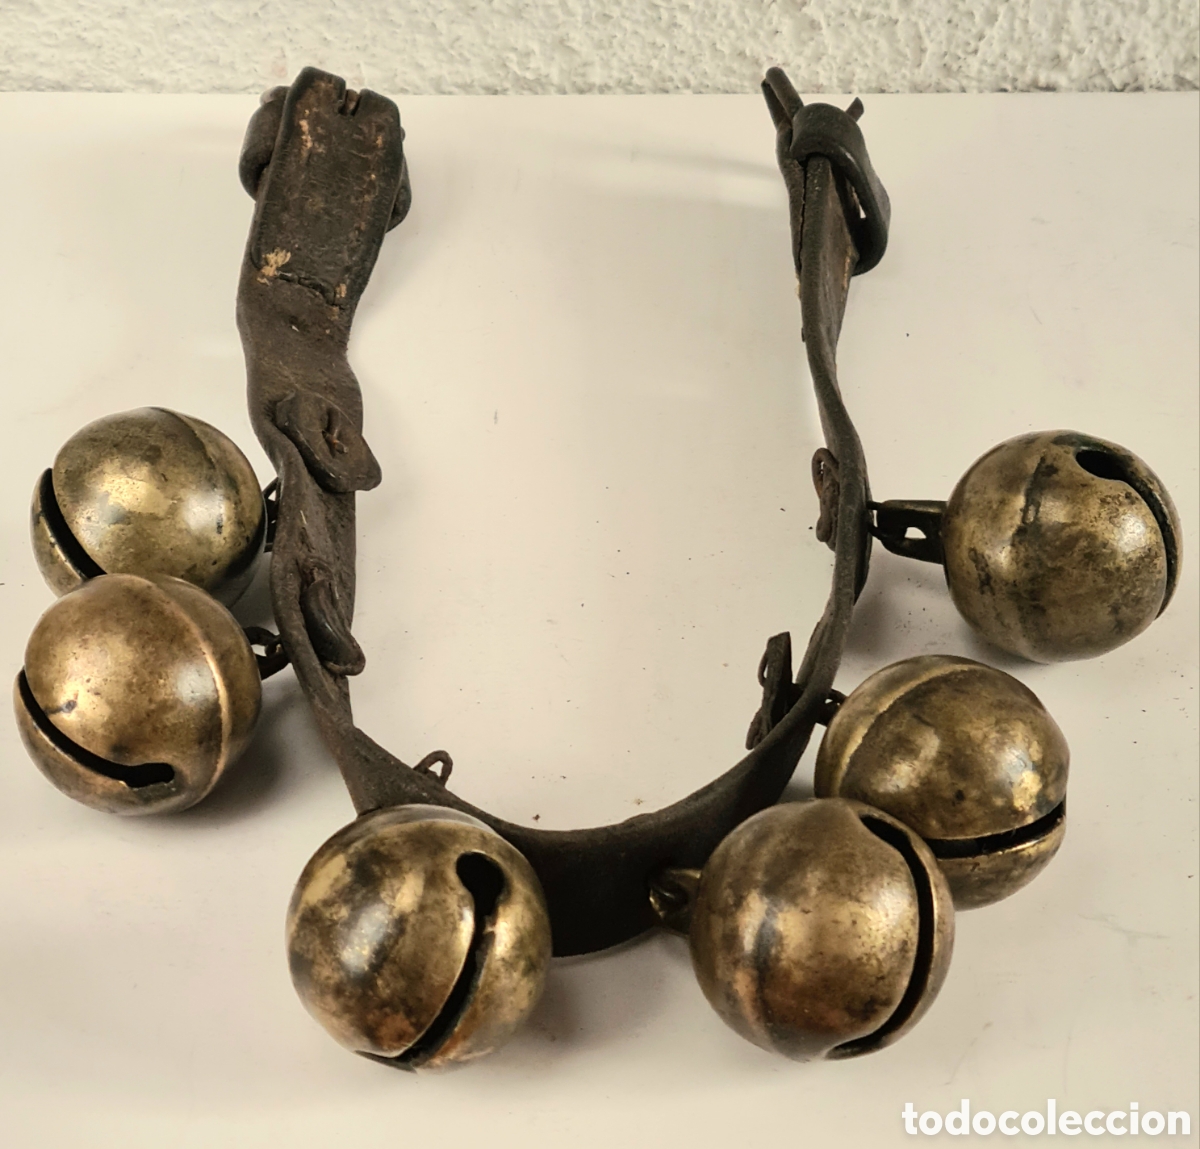 collar de cuero y 6 cascabeles grandes para cab - Acheter Antiquités  équestres et matériel d'équitation ancien sur todocoleccion